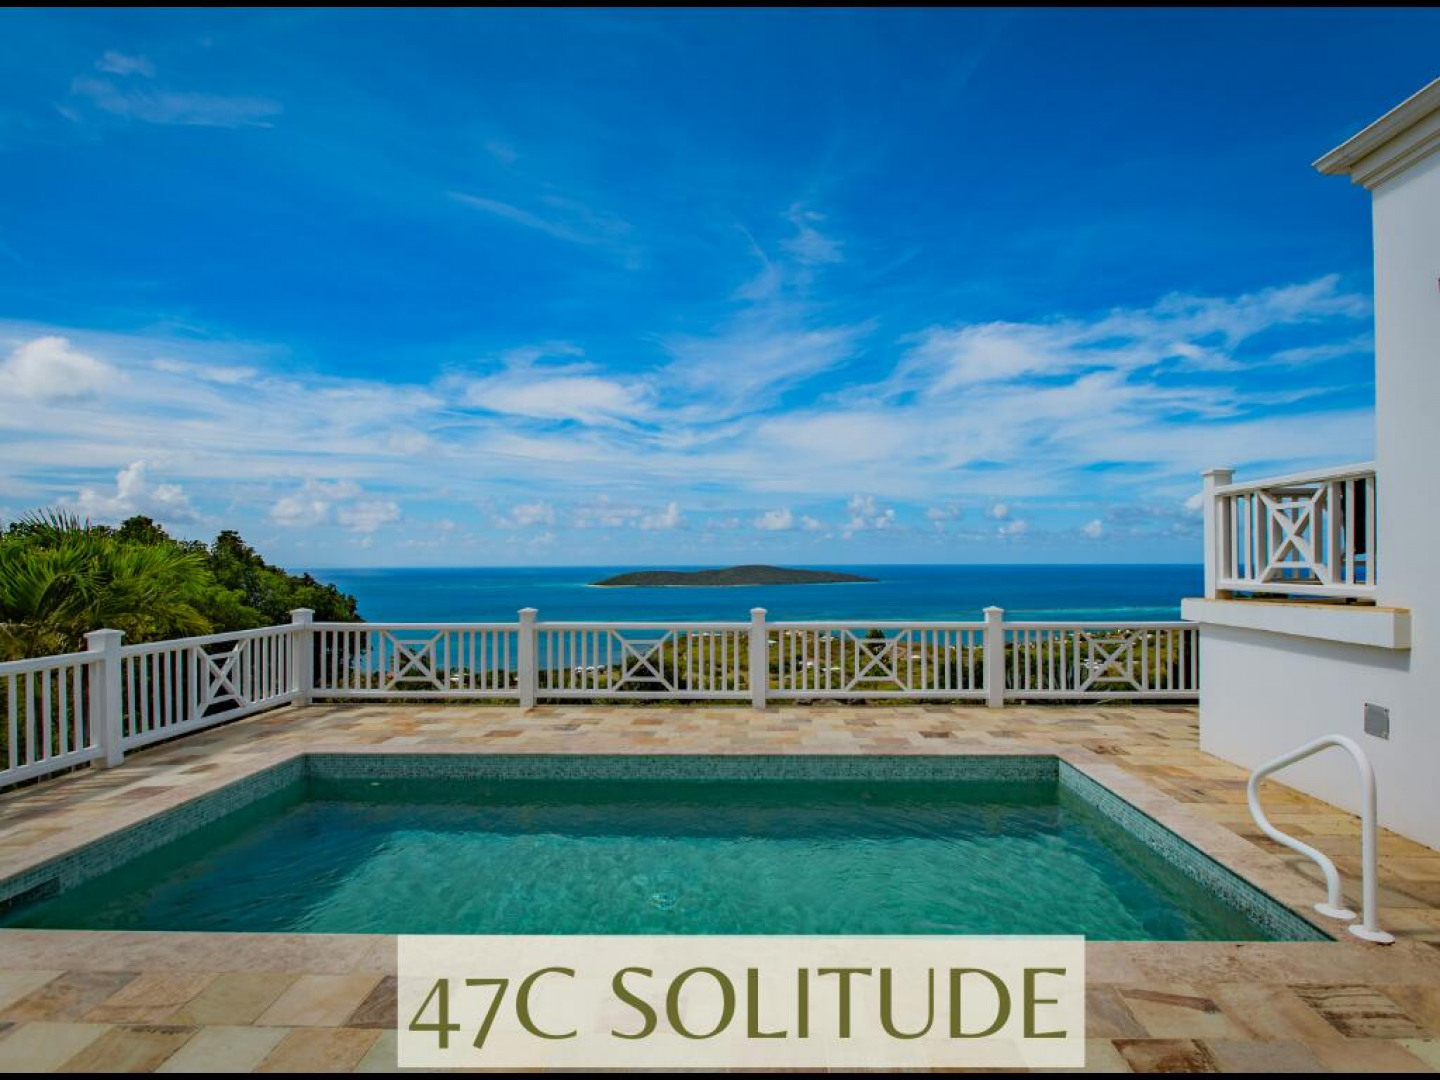 47c Solitude Eb, St. Croix, 00820, MLS# 23-1181